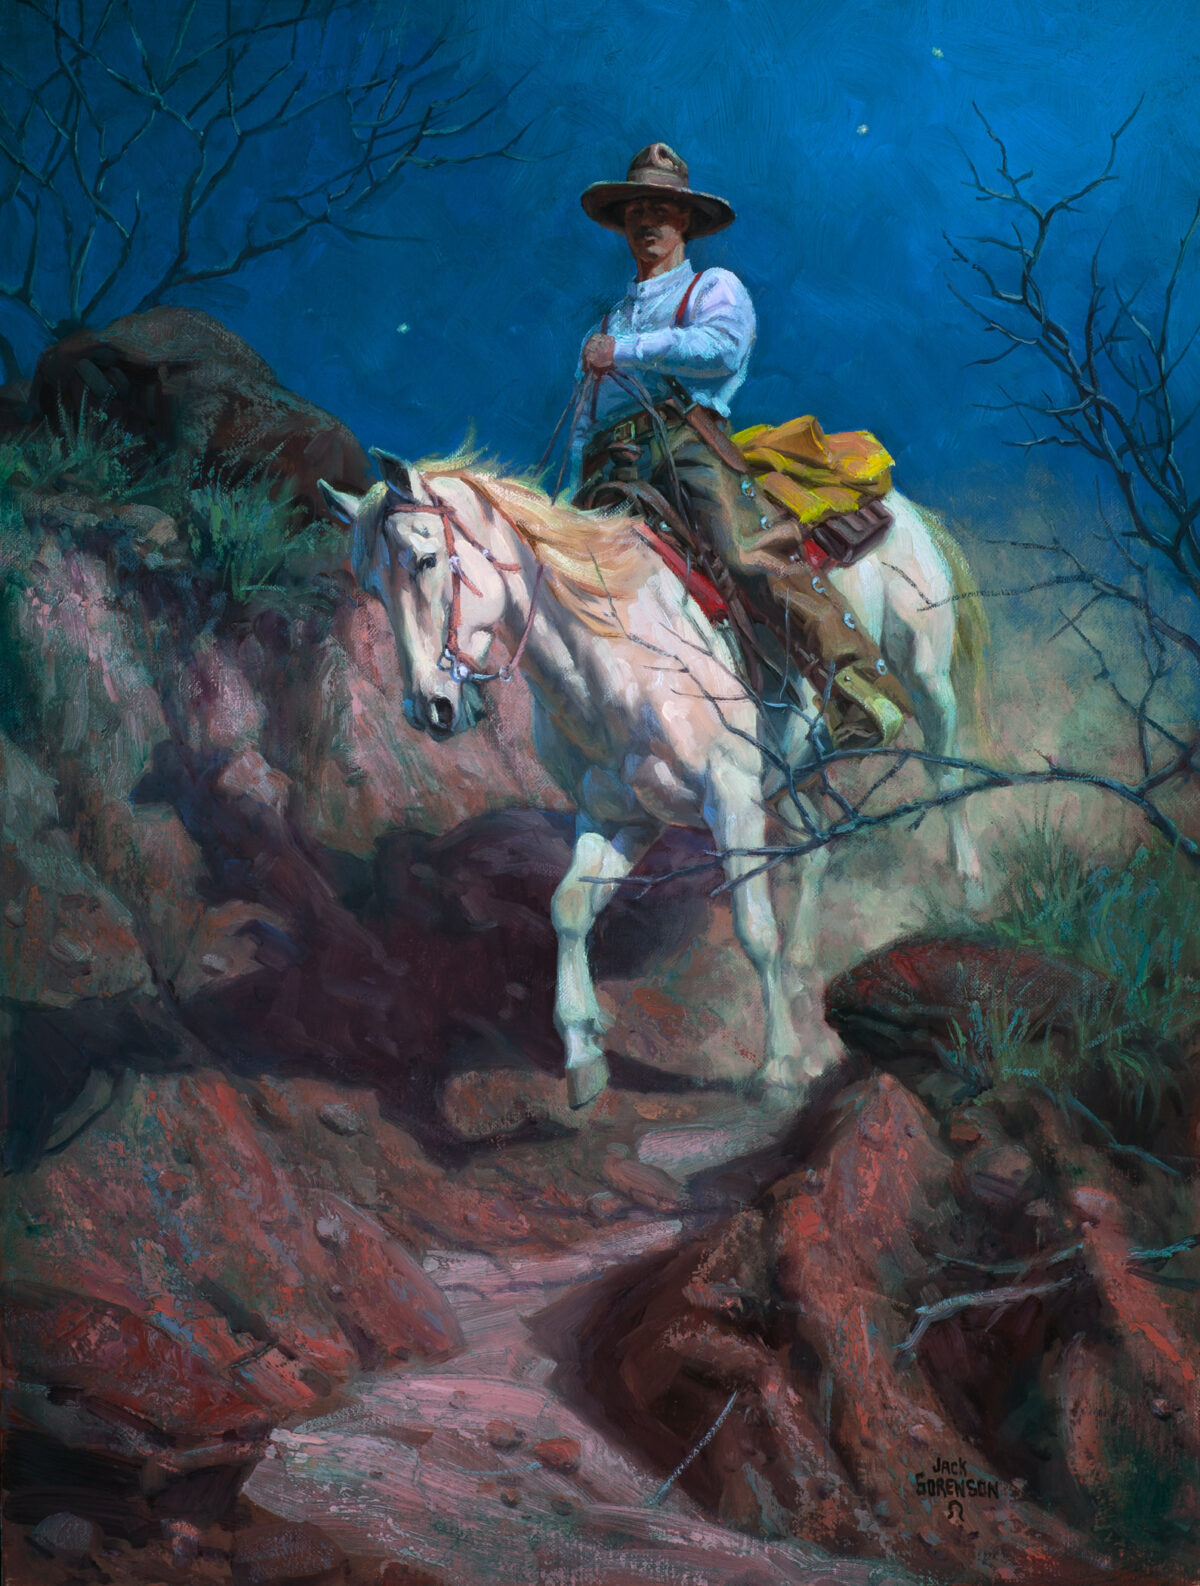 Tác phẩm “Moonlit Trail” (Đường Mòn Dưới Ánh Trăng) vẽ bởi họa sĩ Jack Sorenson. (Ảnh: Đăng dưới sự cho phép của ©Jack Sorenson Fine Art, Inc.)